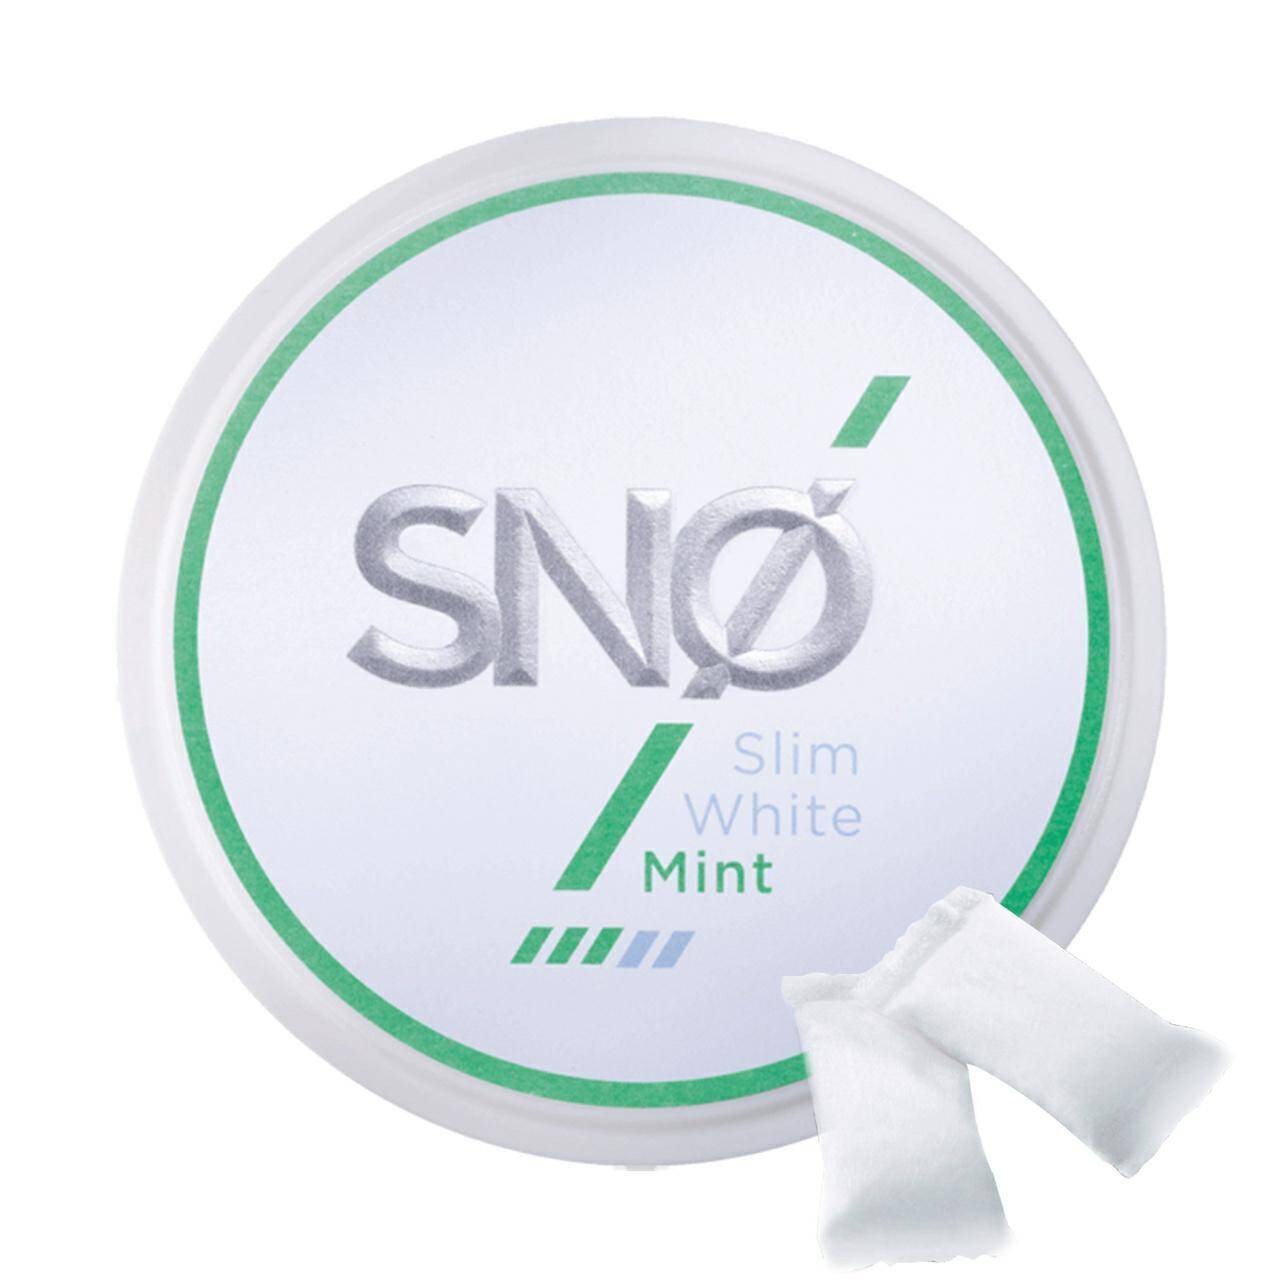 SNUS - Saszetki nikotynowe SNO - Mint 12mg/g (Zdjęcie 1)